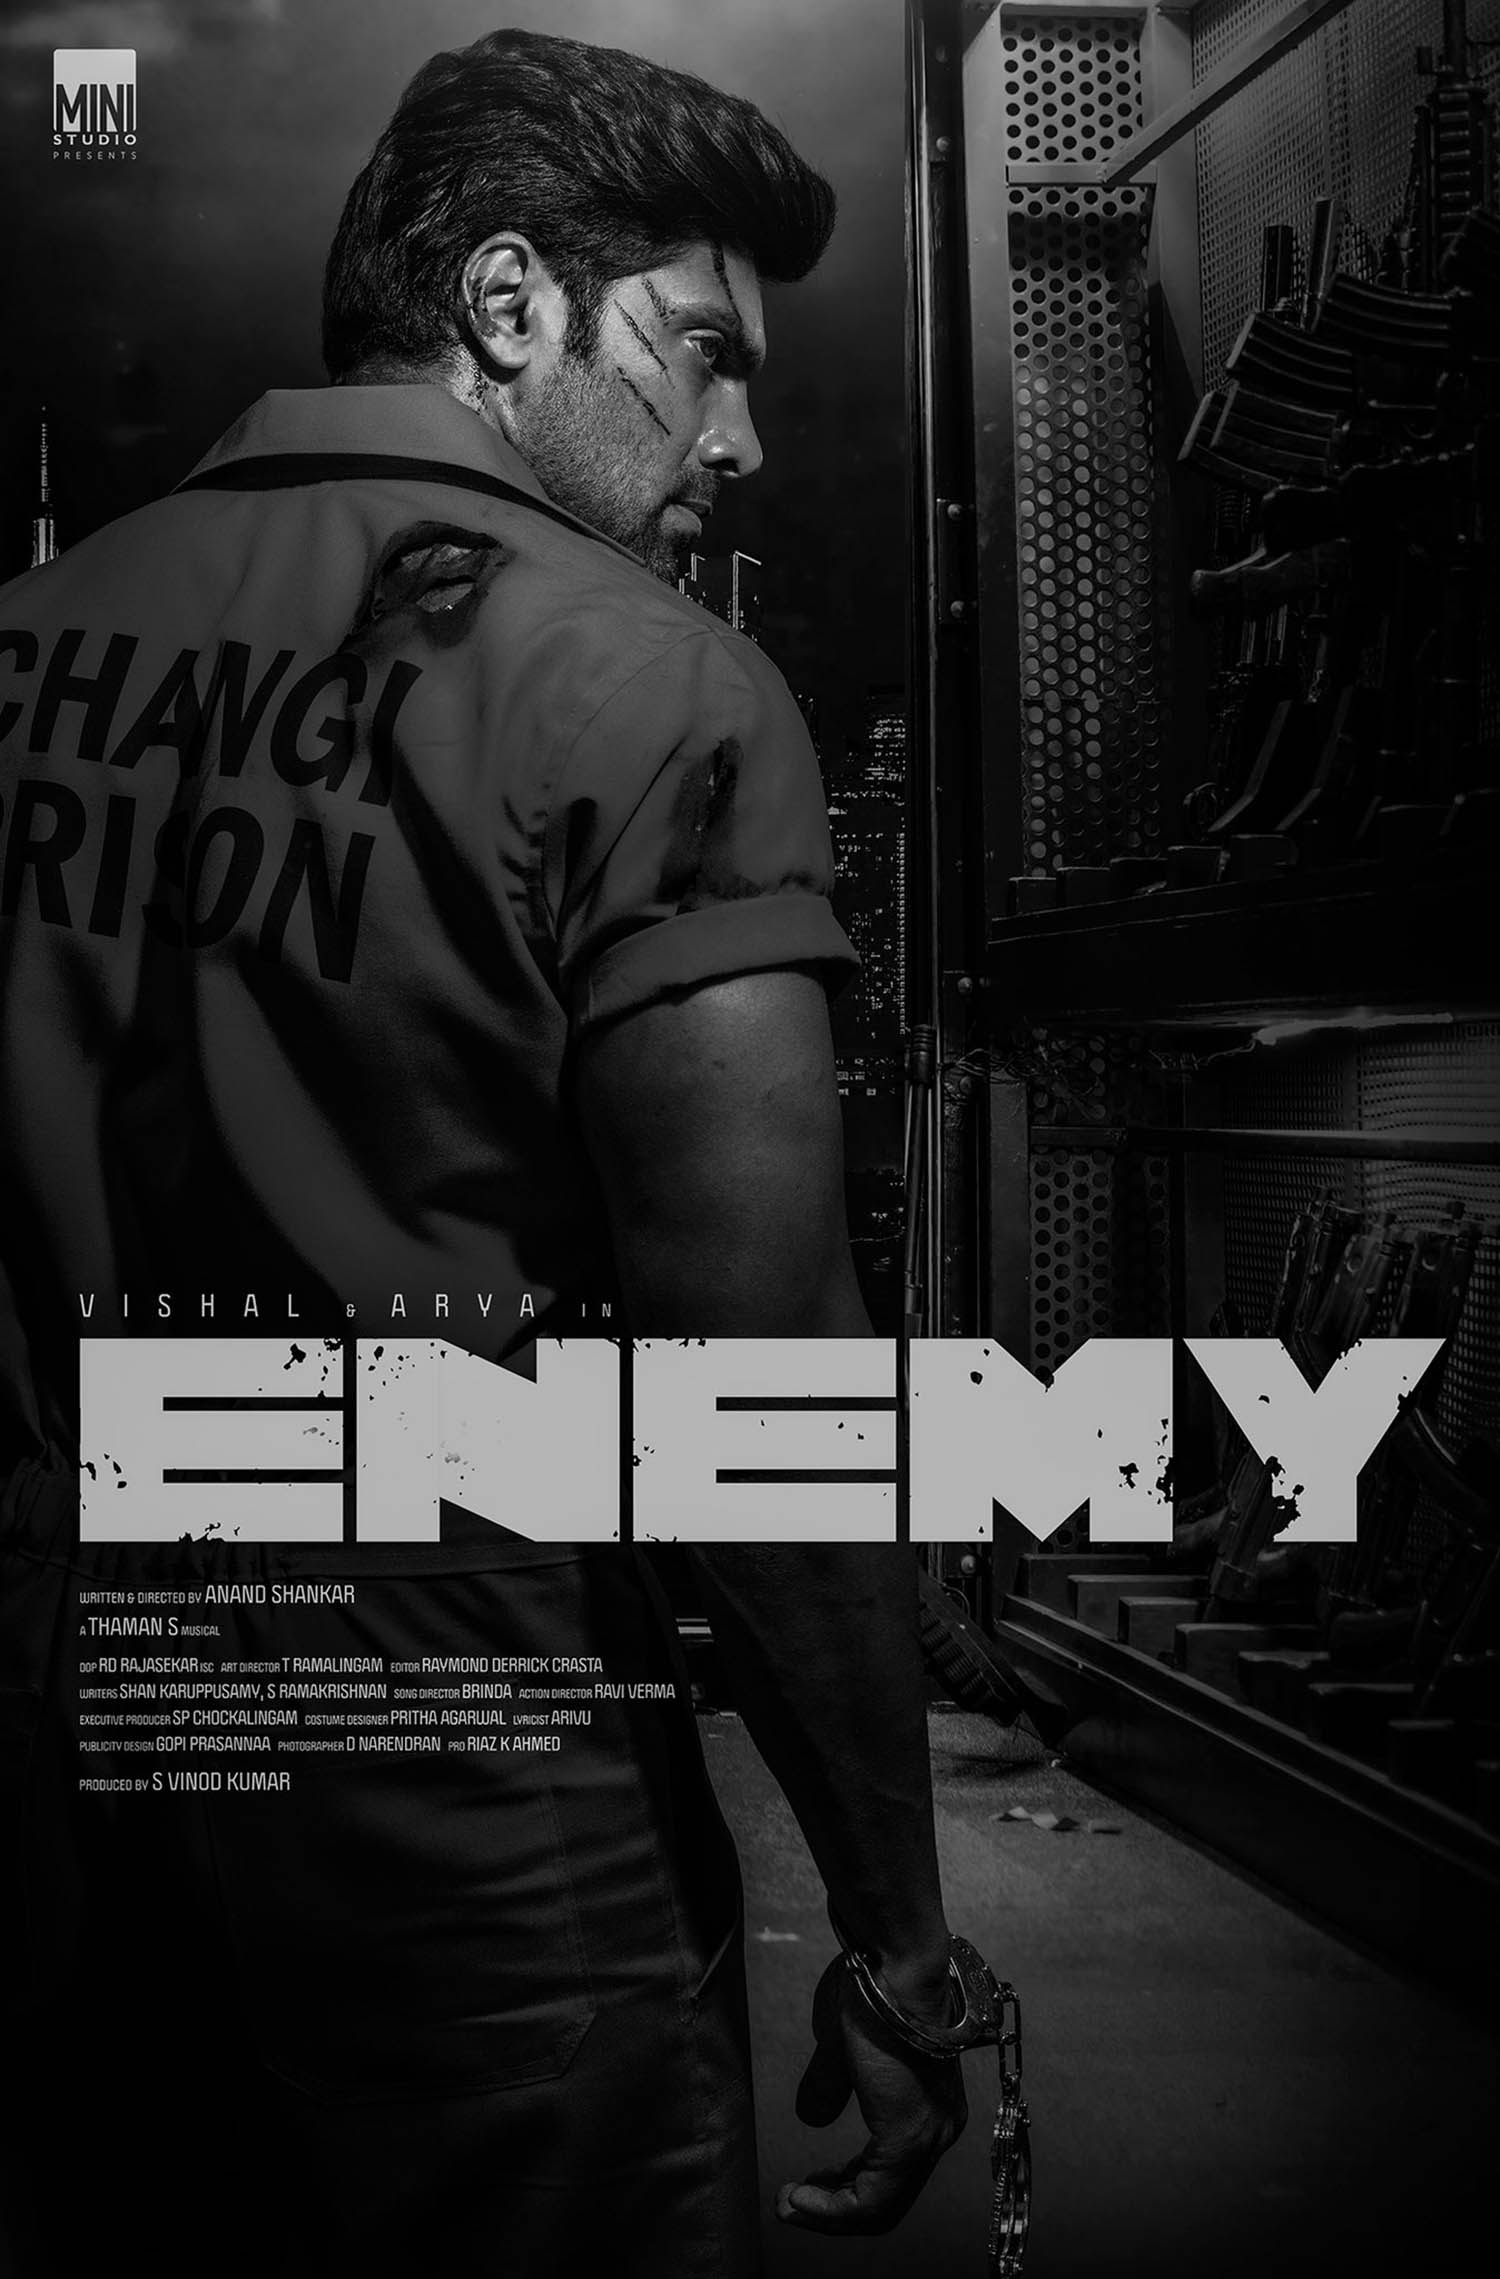 Enemy movie tamil